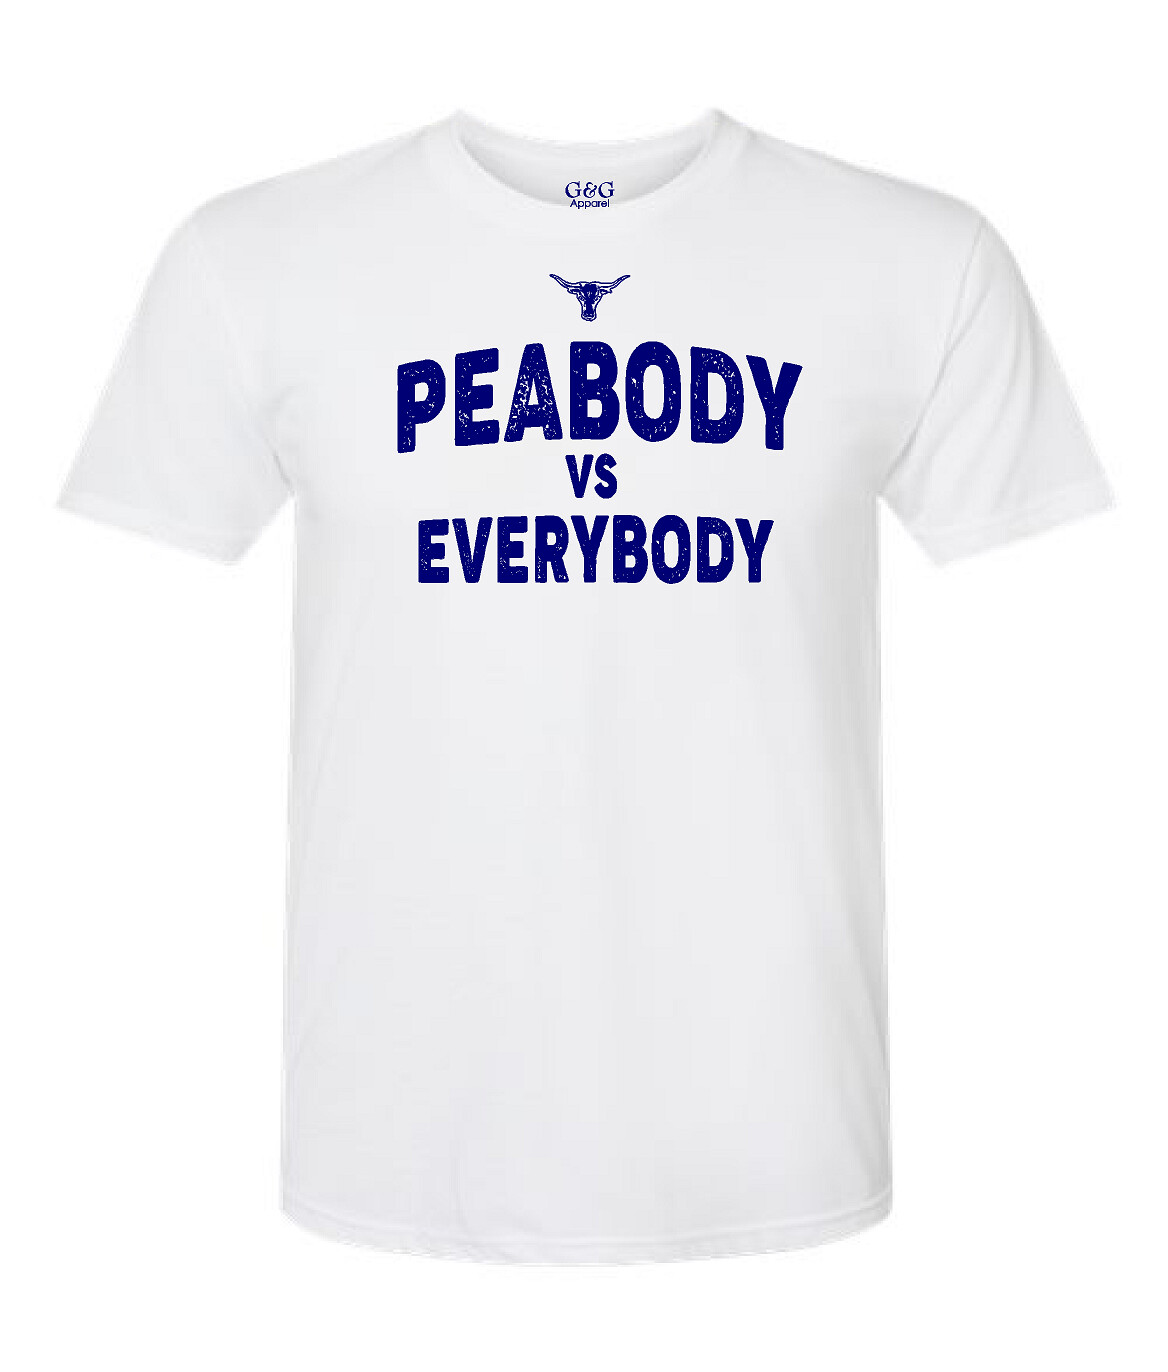 Unisex Premium Soft Cotton Peabody vs Everybody T-Shirt